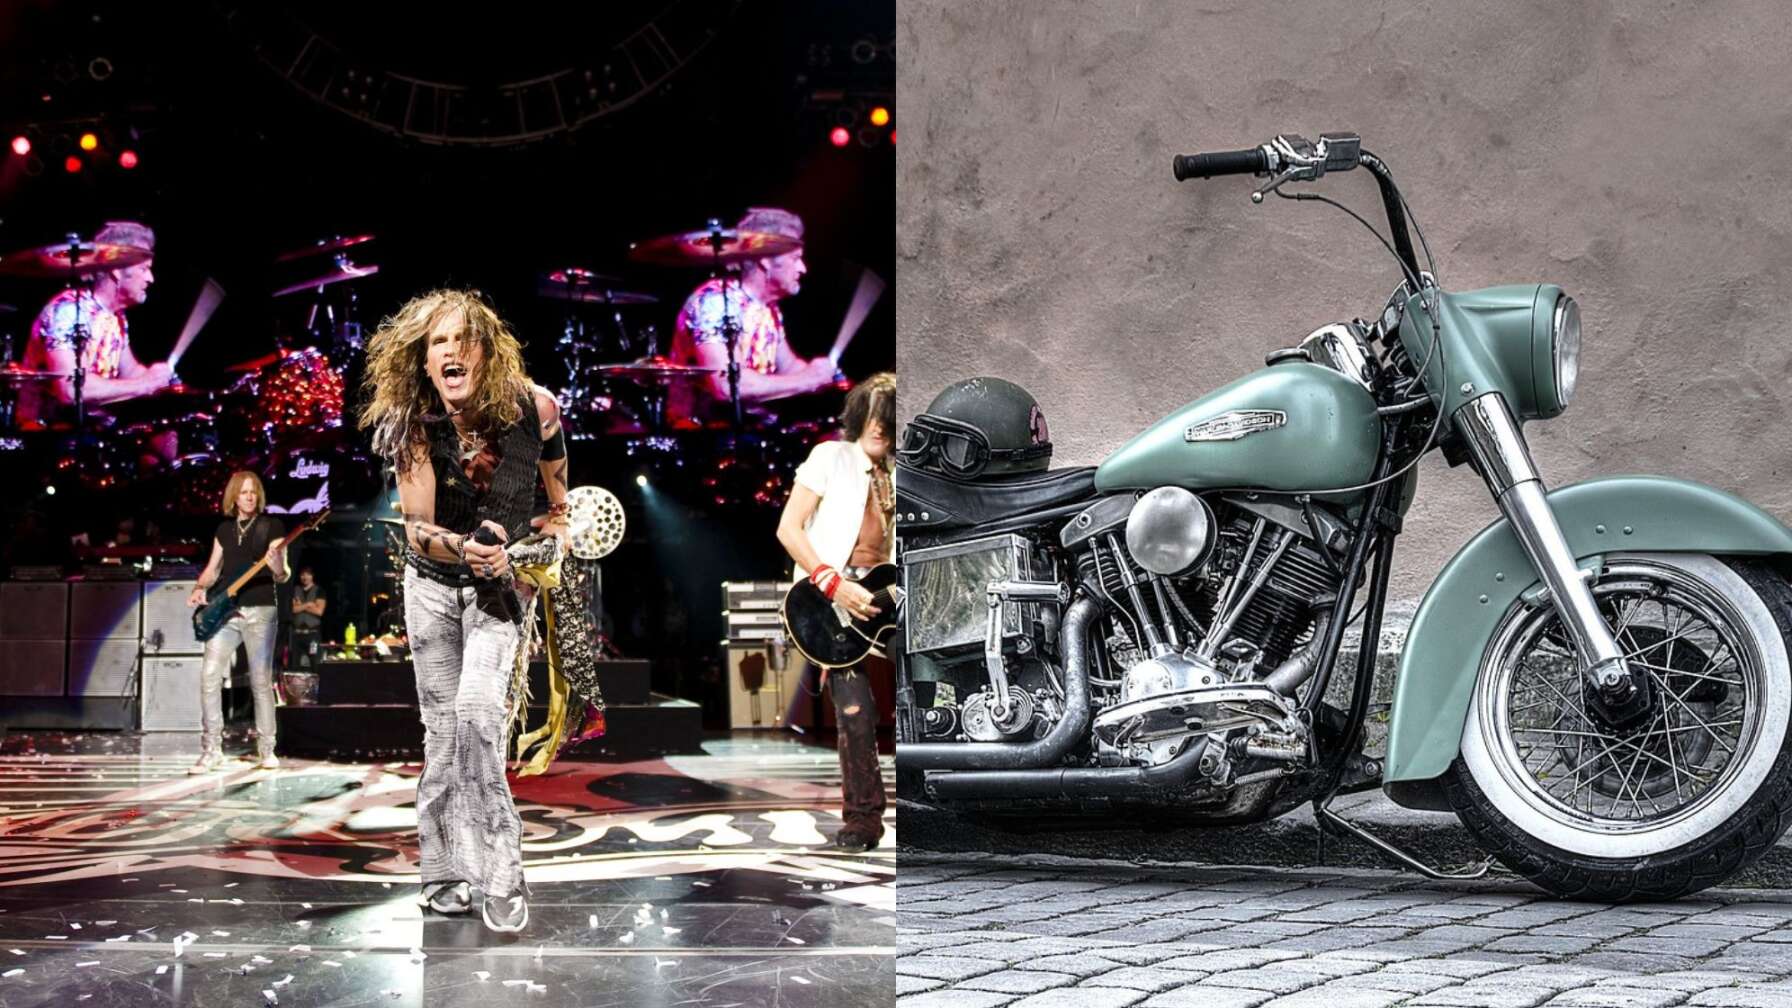 Ein regelrechter Motorradnarr ist auch Steven Tyler von Aerosmith. Der Musiker aus Boston hat sogar eine eigene Custome Firma gegründet. Mittlerweile kenn jeder Rockfan mit großem Geldbeutle eine Harley von Dirico Custom Motorcycles erwerben.